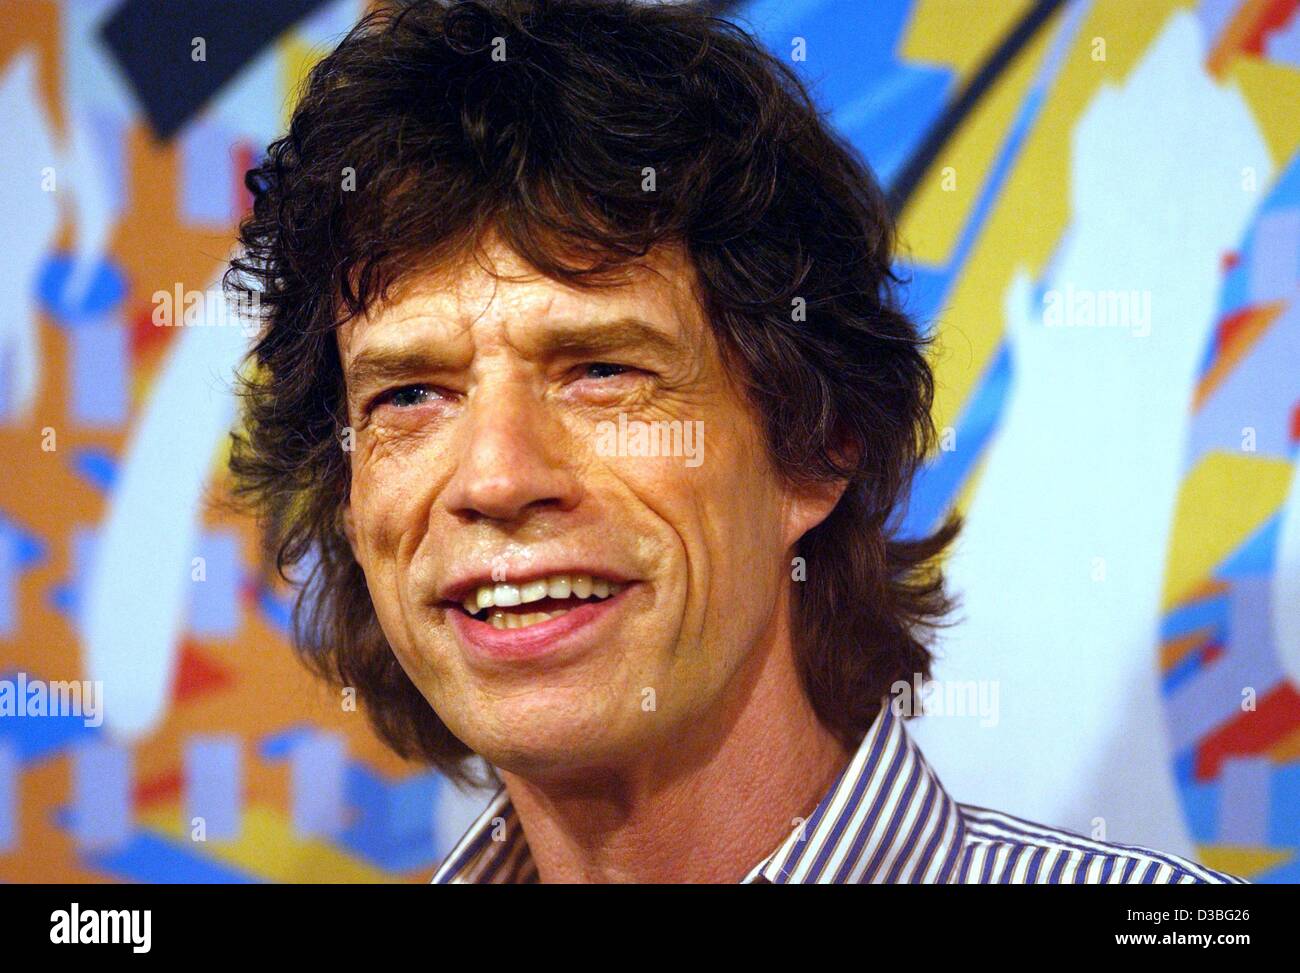 (Dpa) - Mick Jagger, Frontmann der britischen Rockgruppe Rolling Stones, lächelt während einer Pressekonferenz in München, 5. Juni 2003. Stockfoto